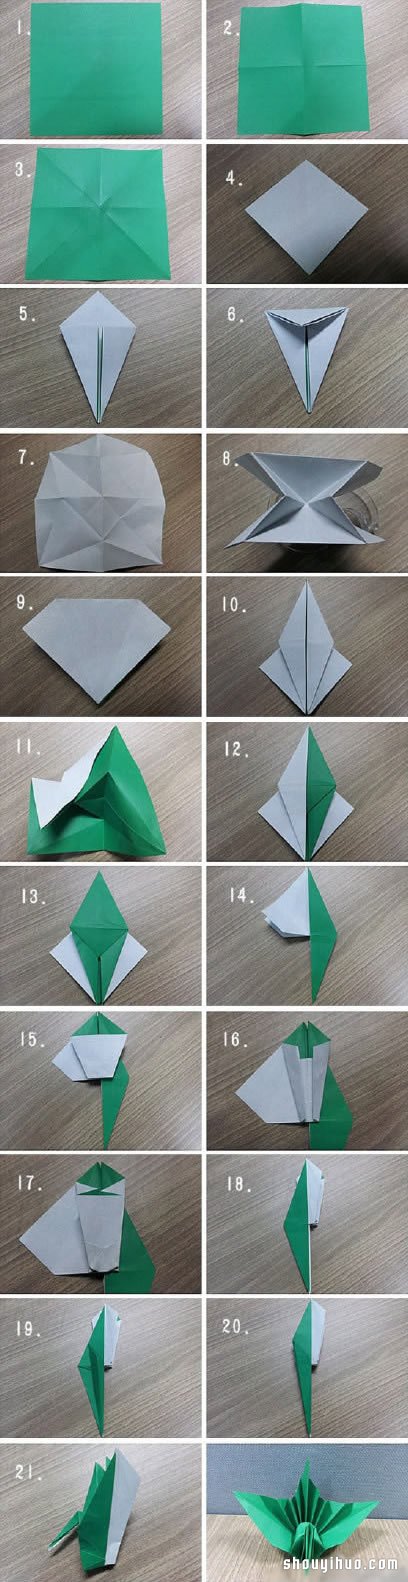 这款比较特别的立体千纸鹤的折纸方法步骤,请参考下面的详细图解教程